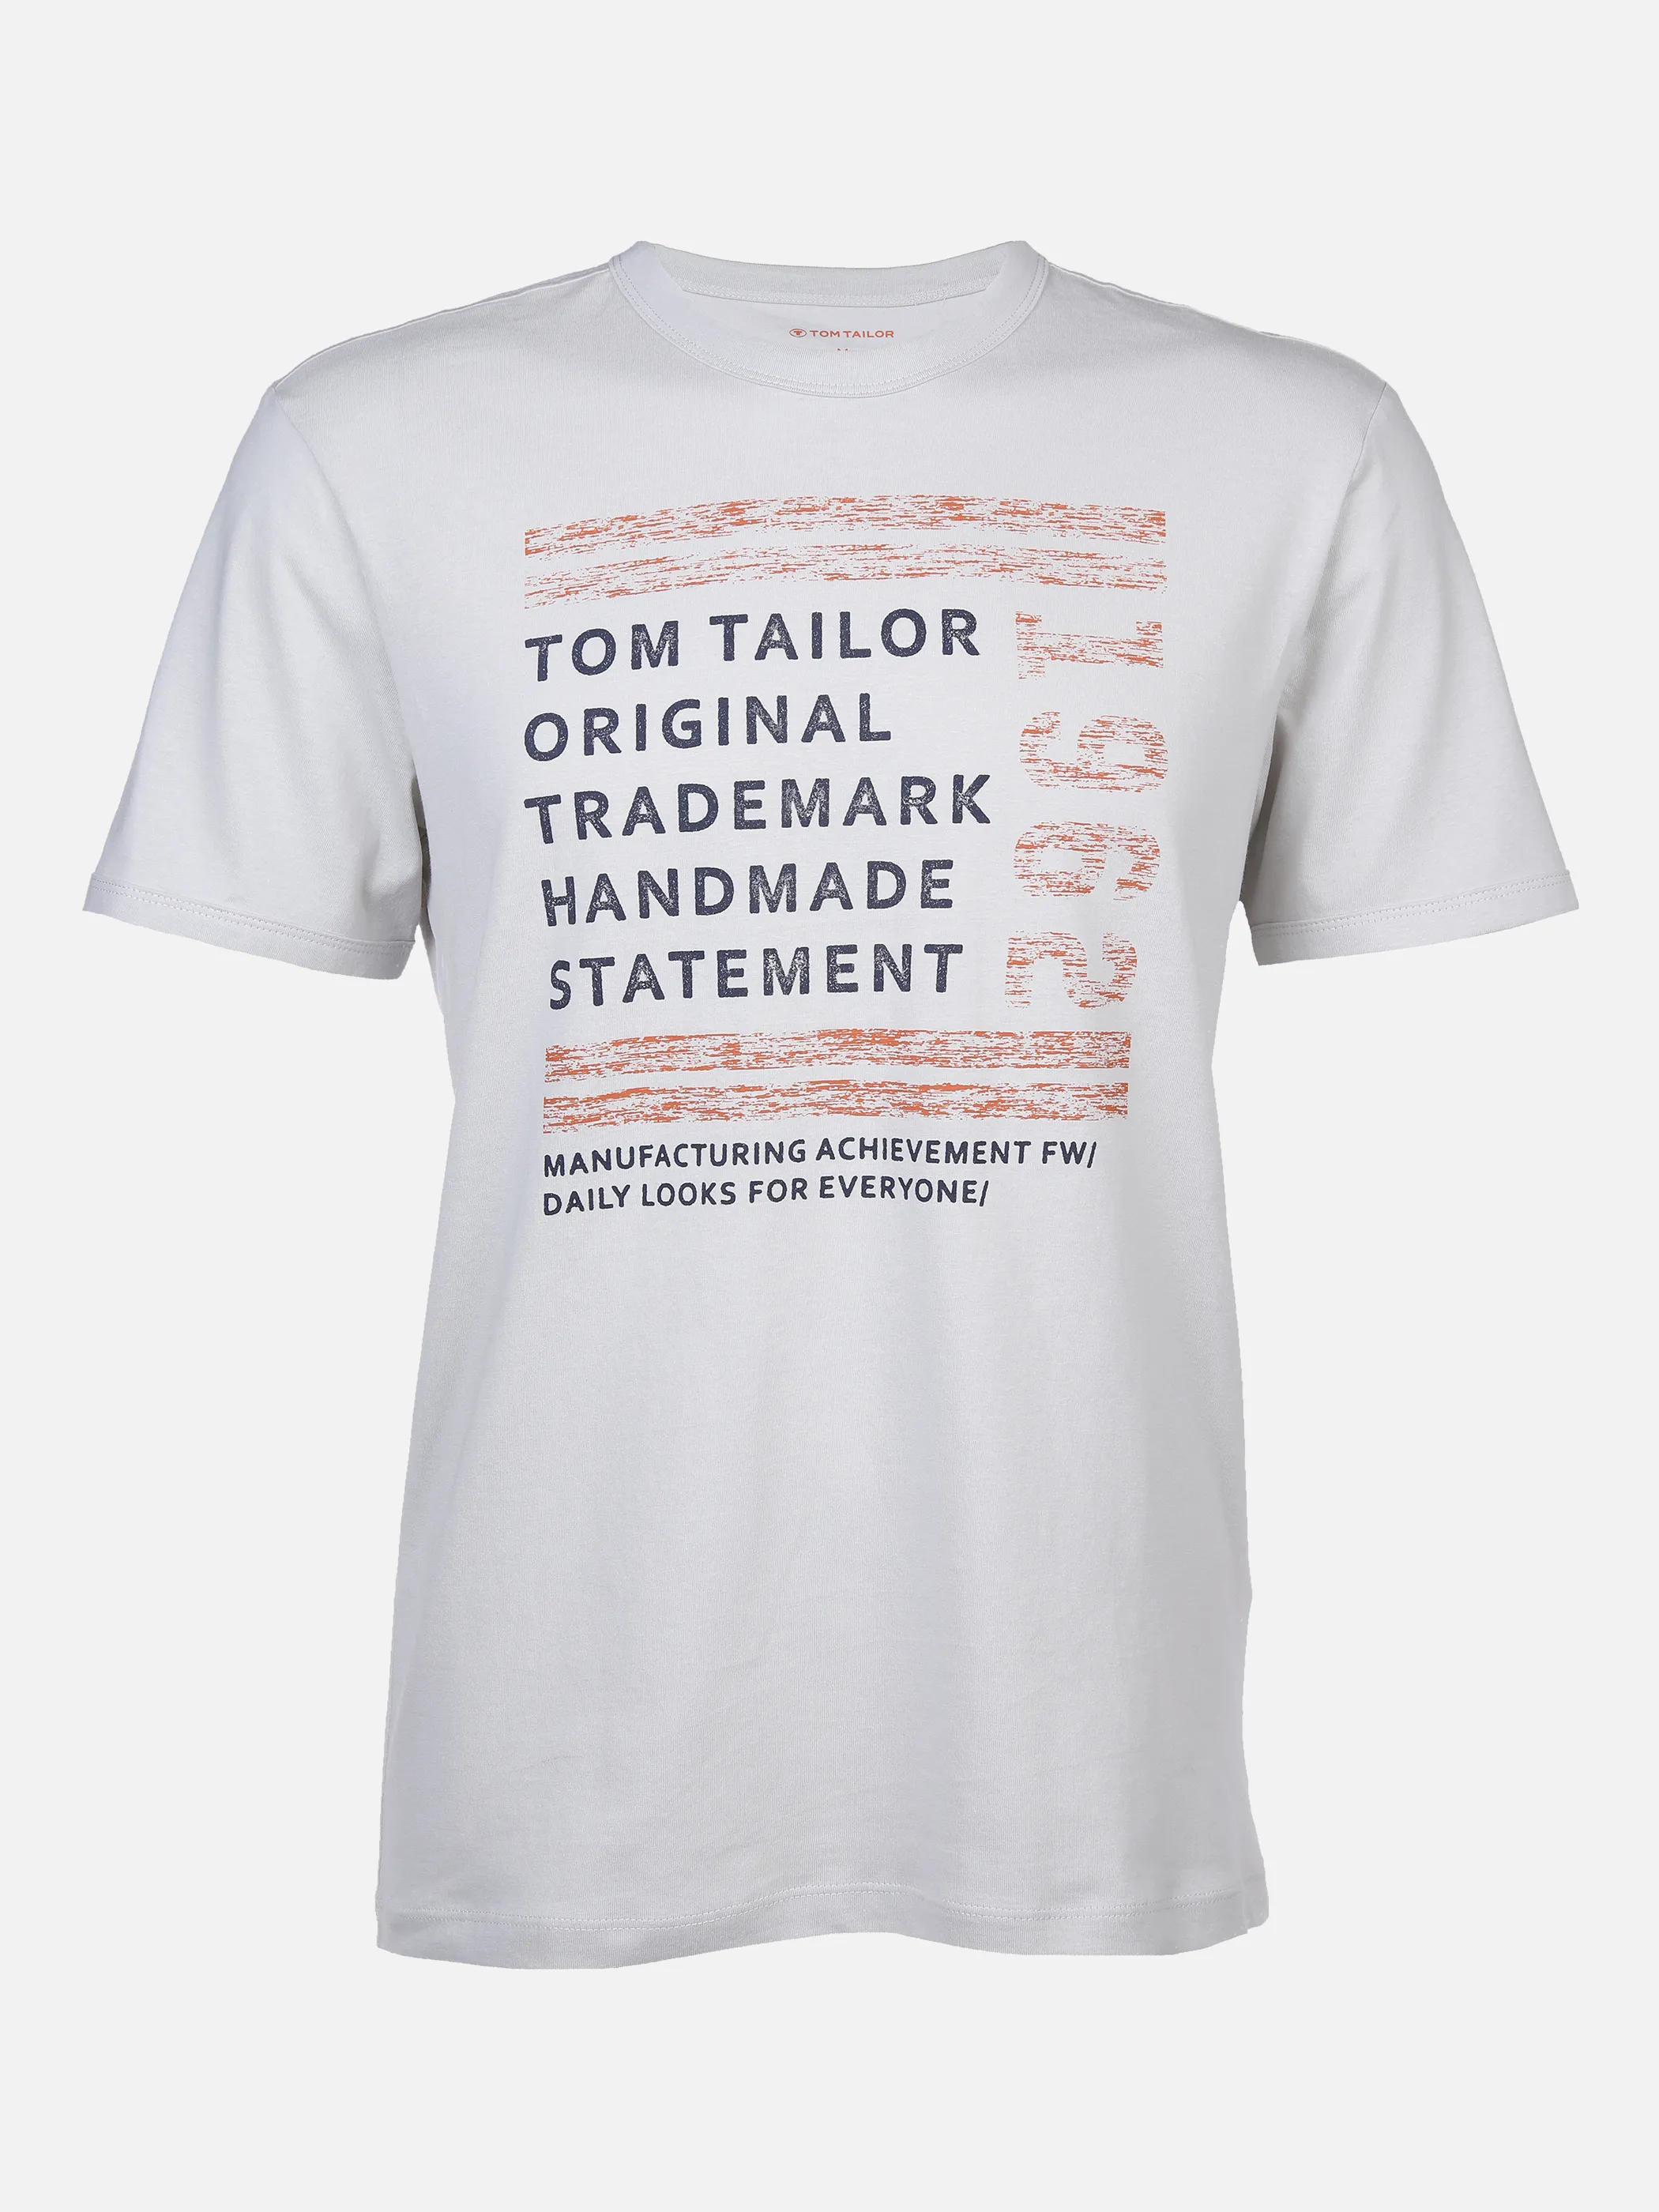 Tom Tailor 1032906 printed tshirt Grau 869524 29767 1